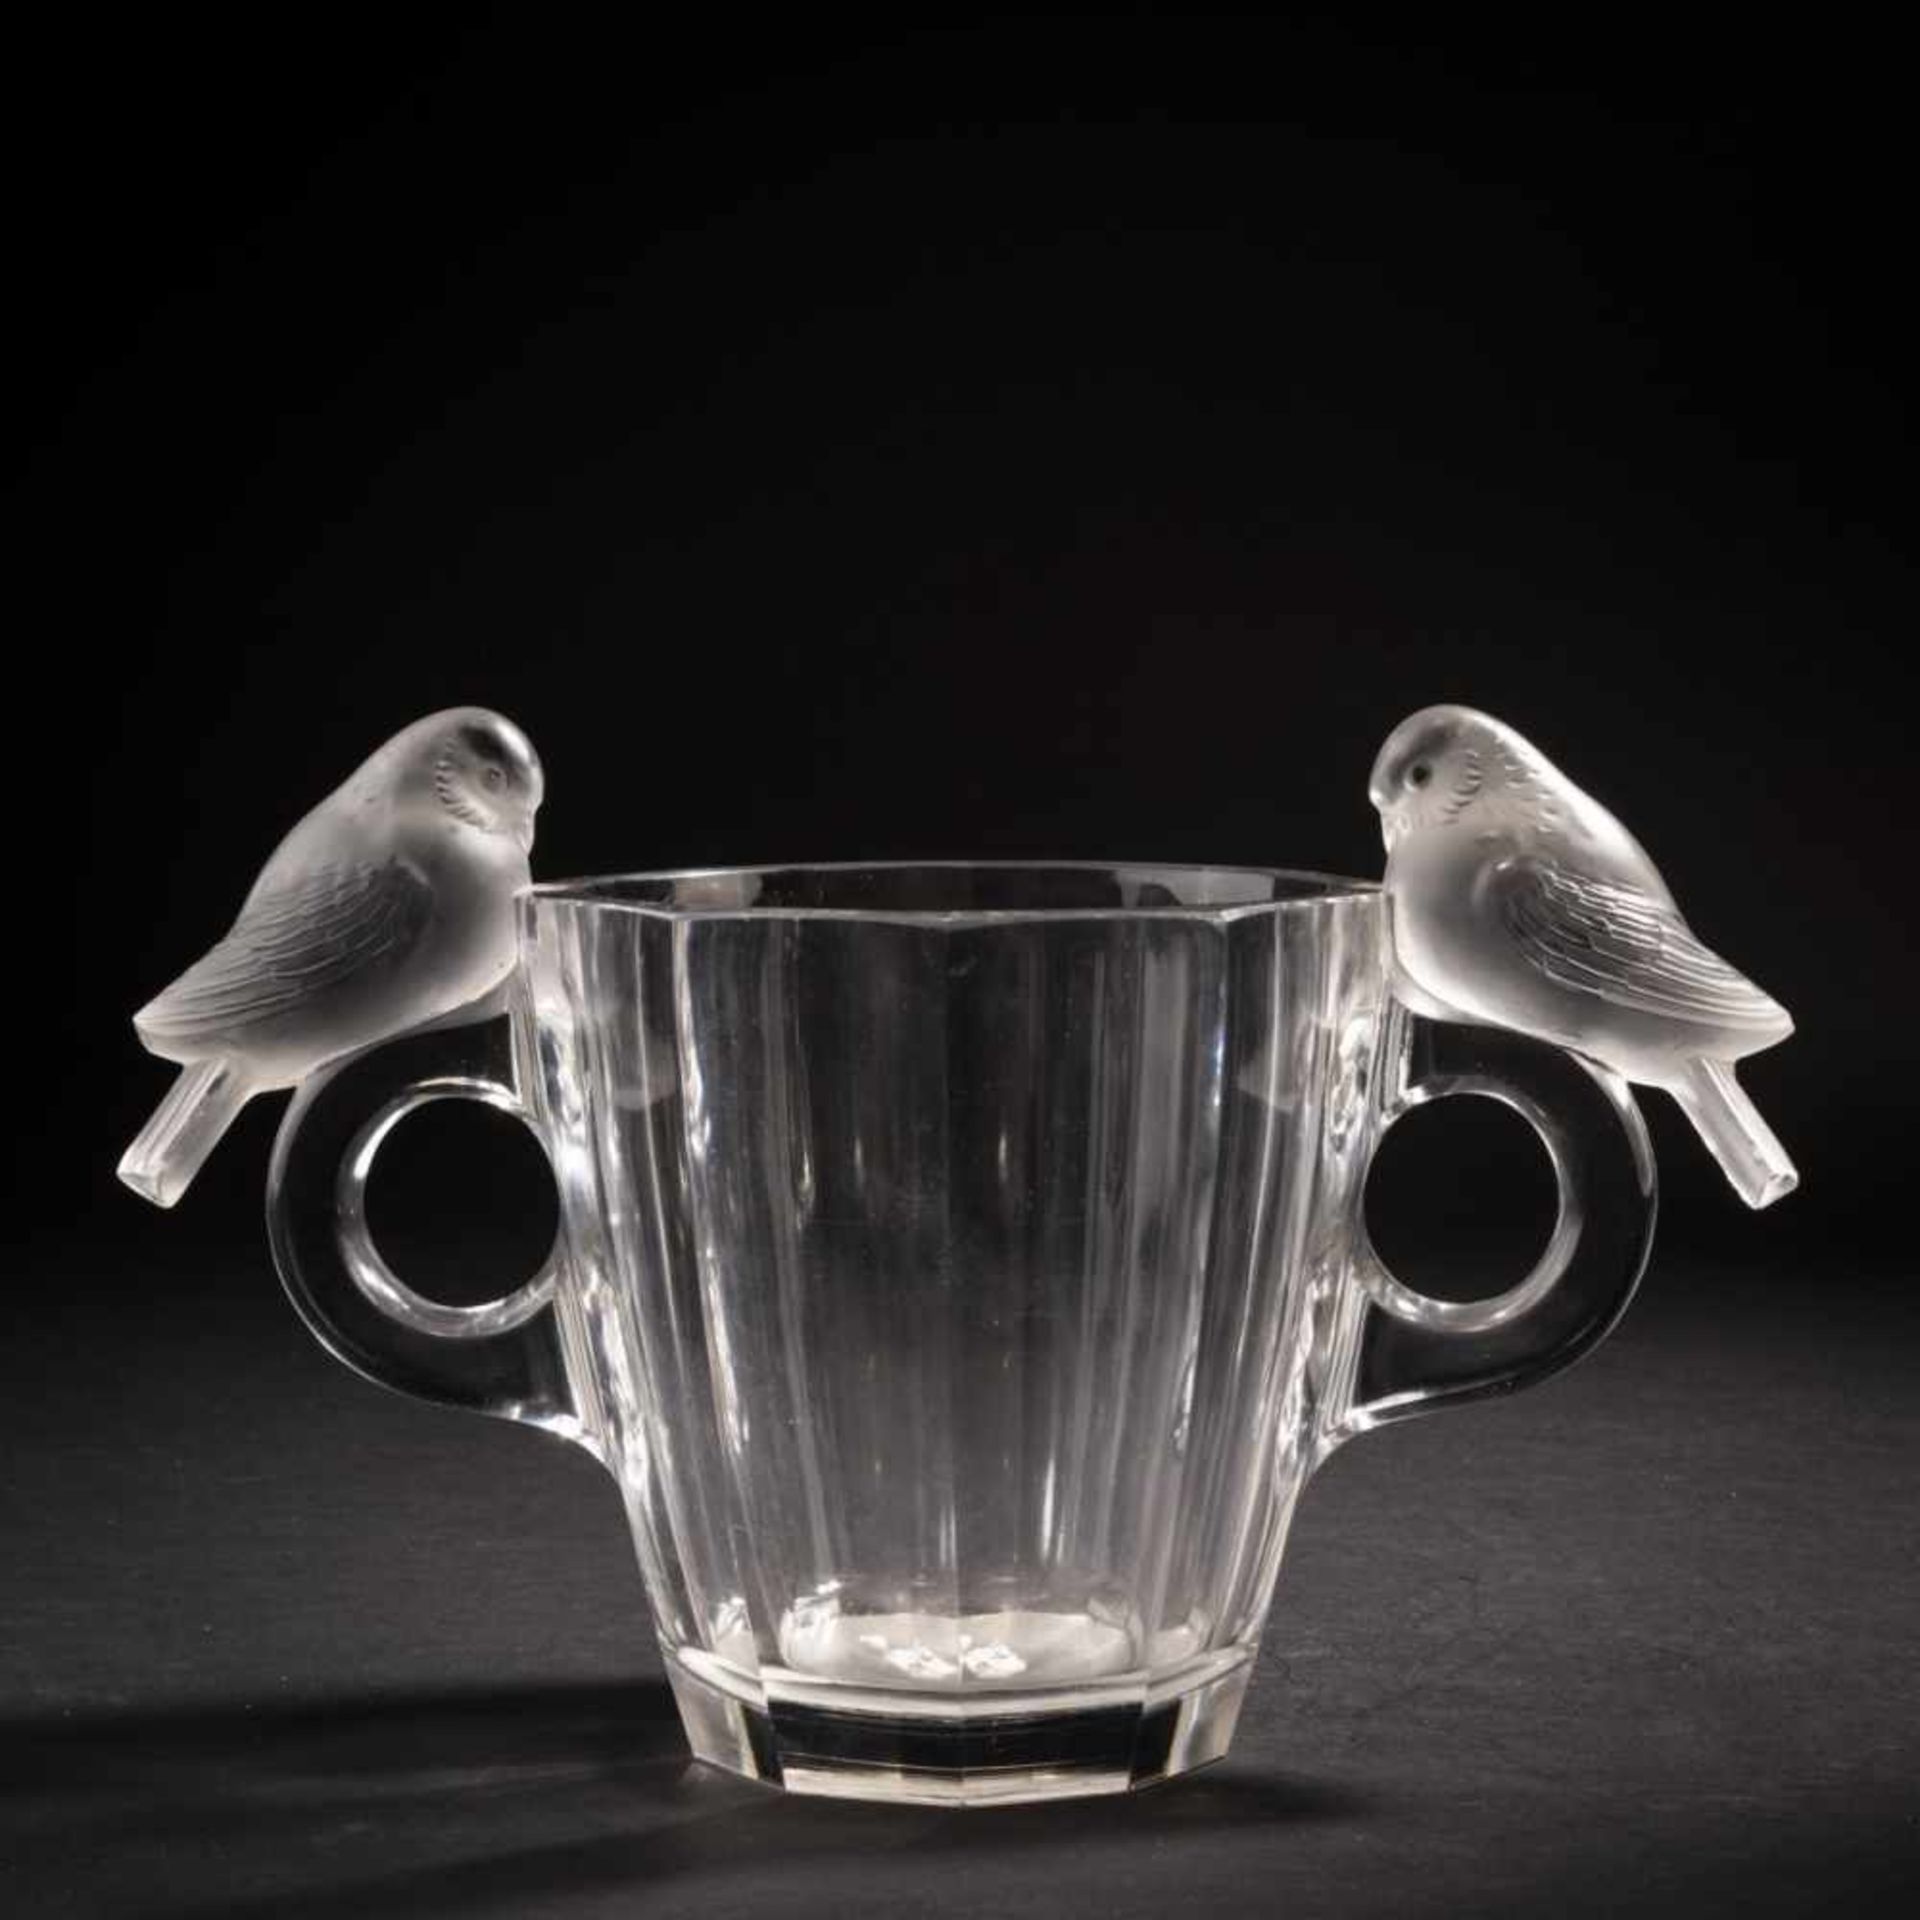 René Lalique, 'Deux Pigeons' vase, 1931'Deux Pigeons' vase, 1931H. 20.5 cm. Clear, moulded glass,